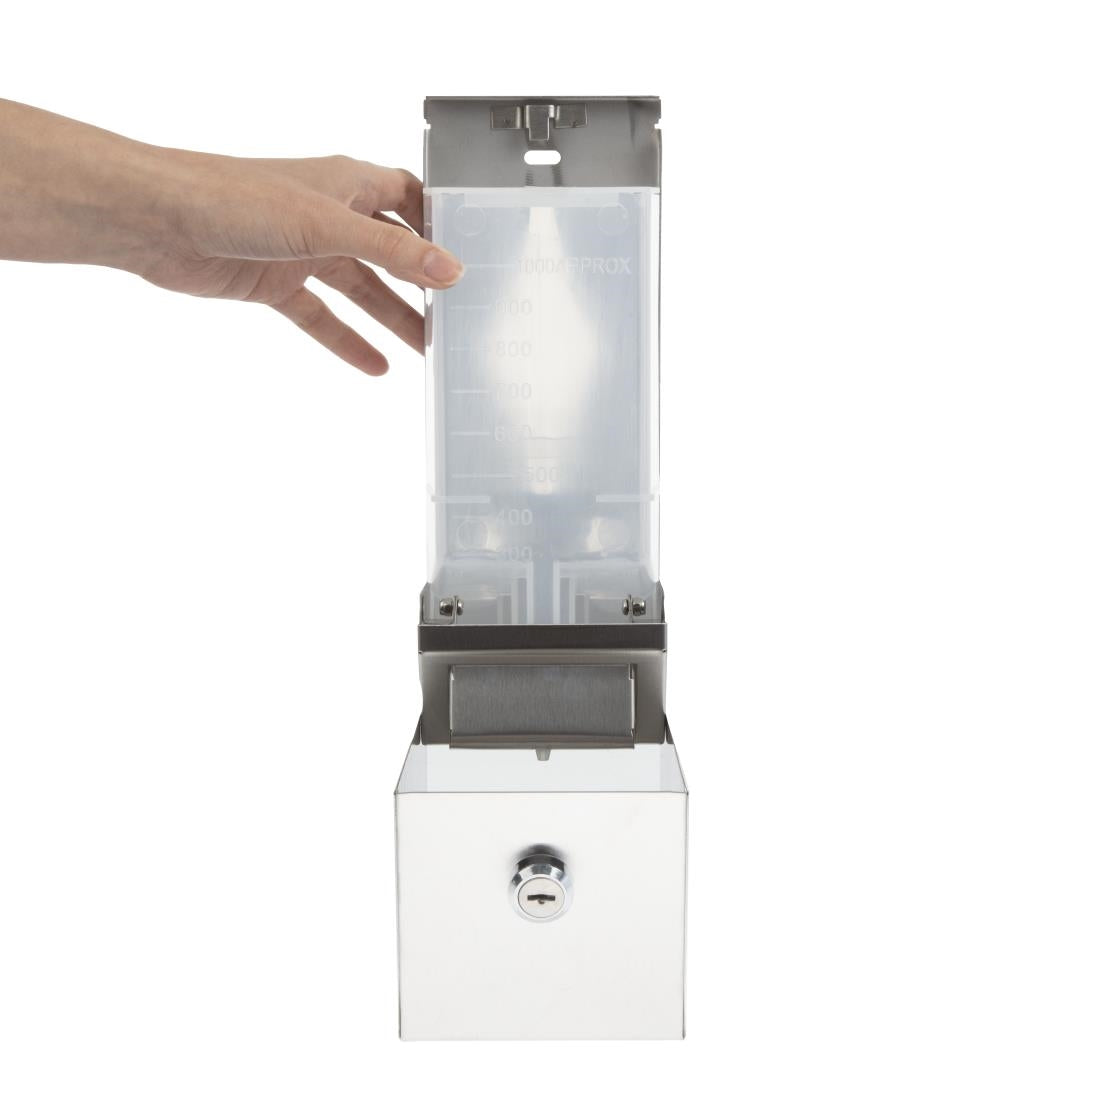 Jantex Stainless Steel Soap and Hand Sanitiser Gel Dispenser 1 Litre JD Catering Equipment Solutions Ltd